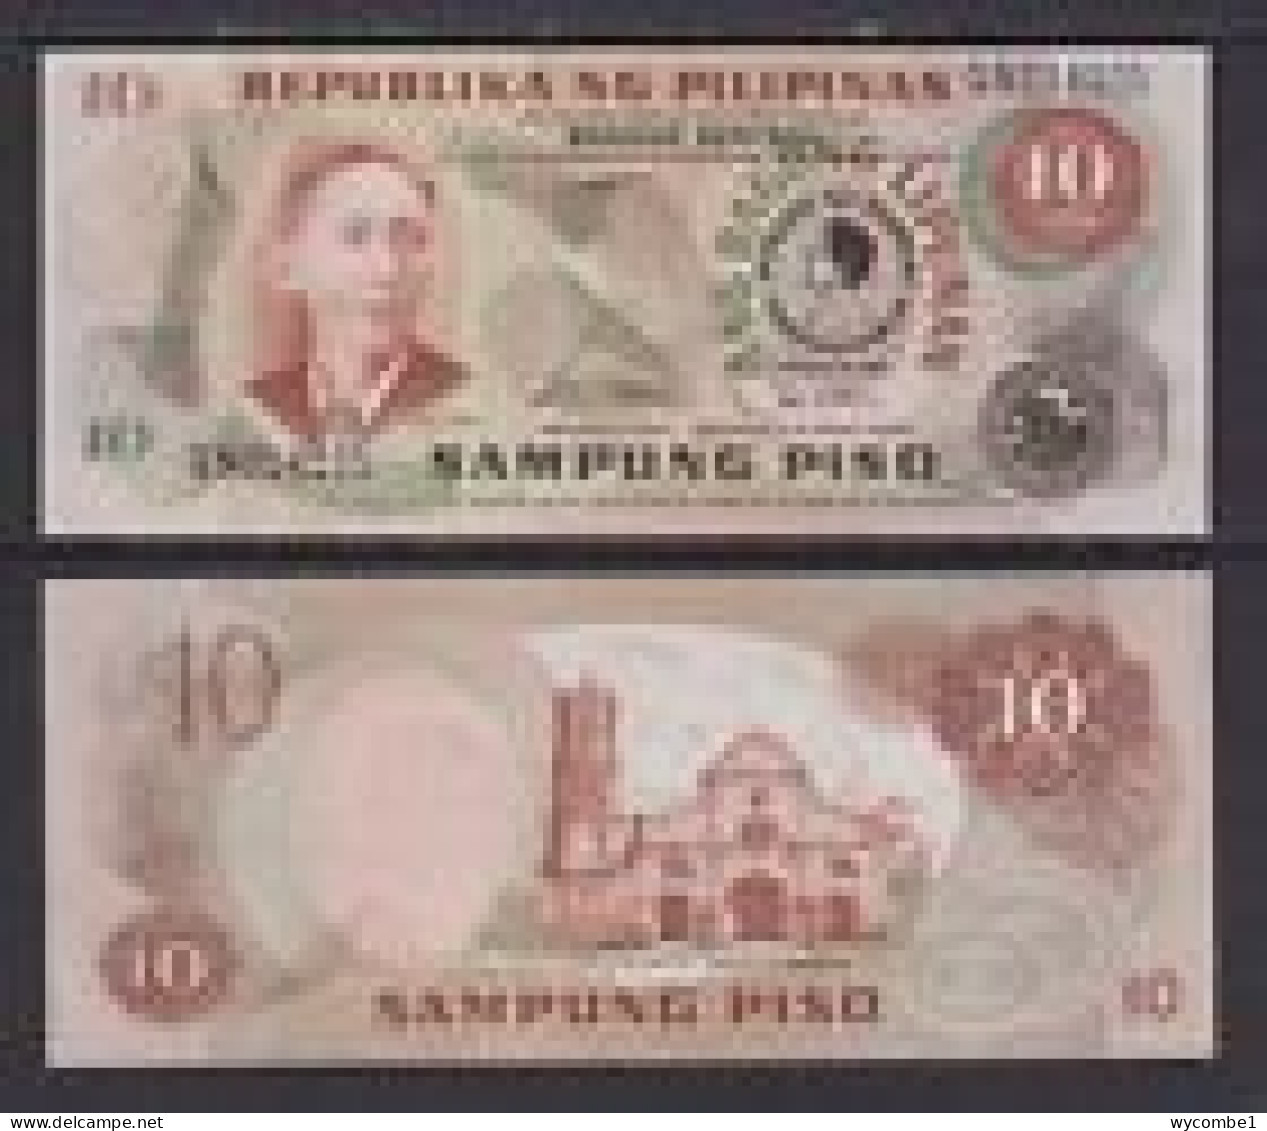 PHILIPPINES - 1981 10 Pesos UNC - Philippines